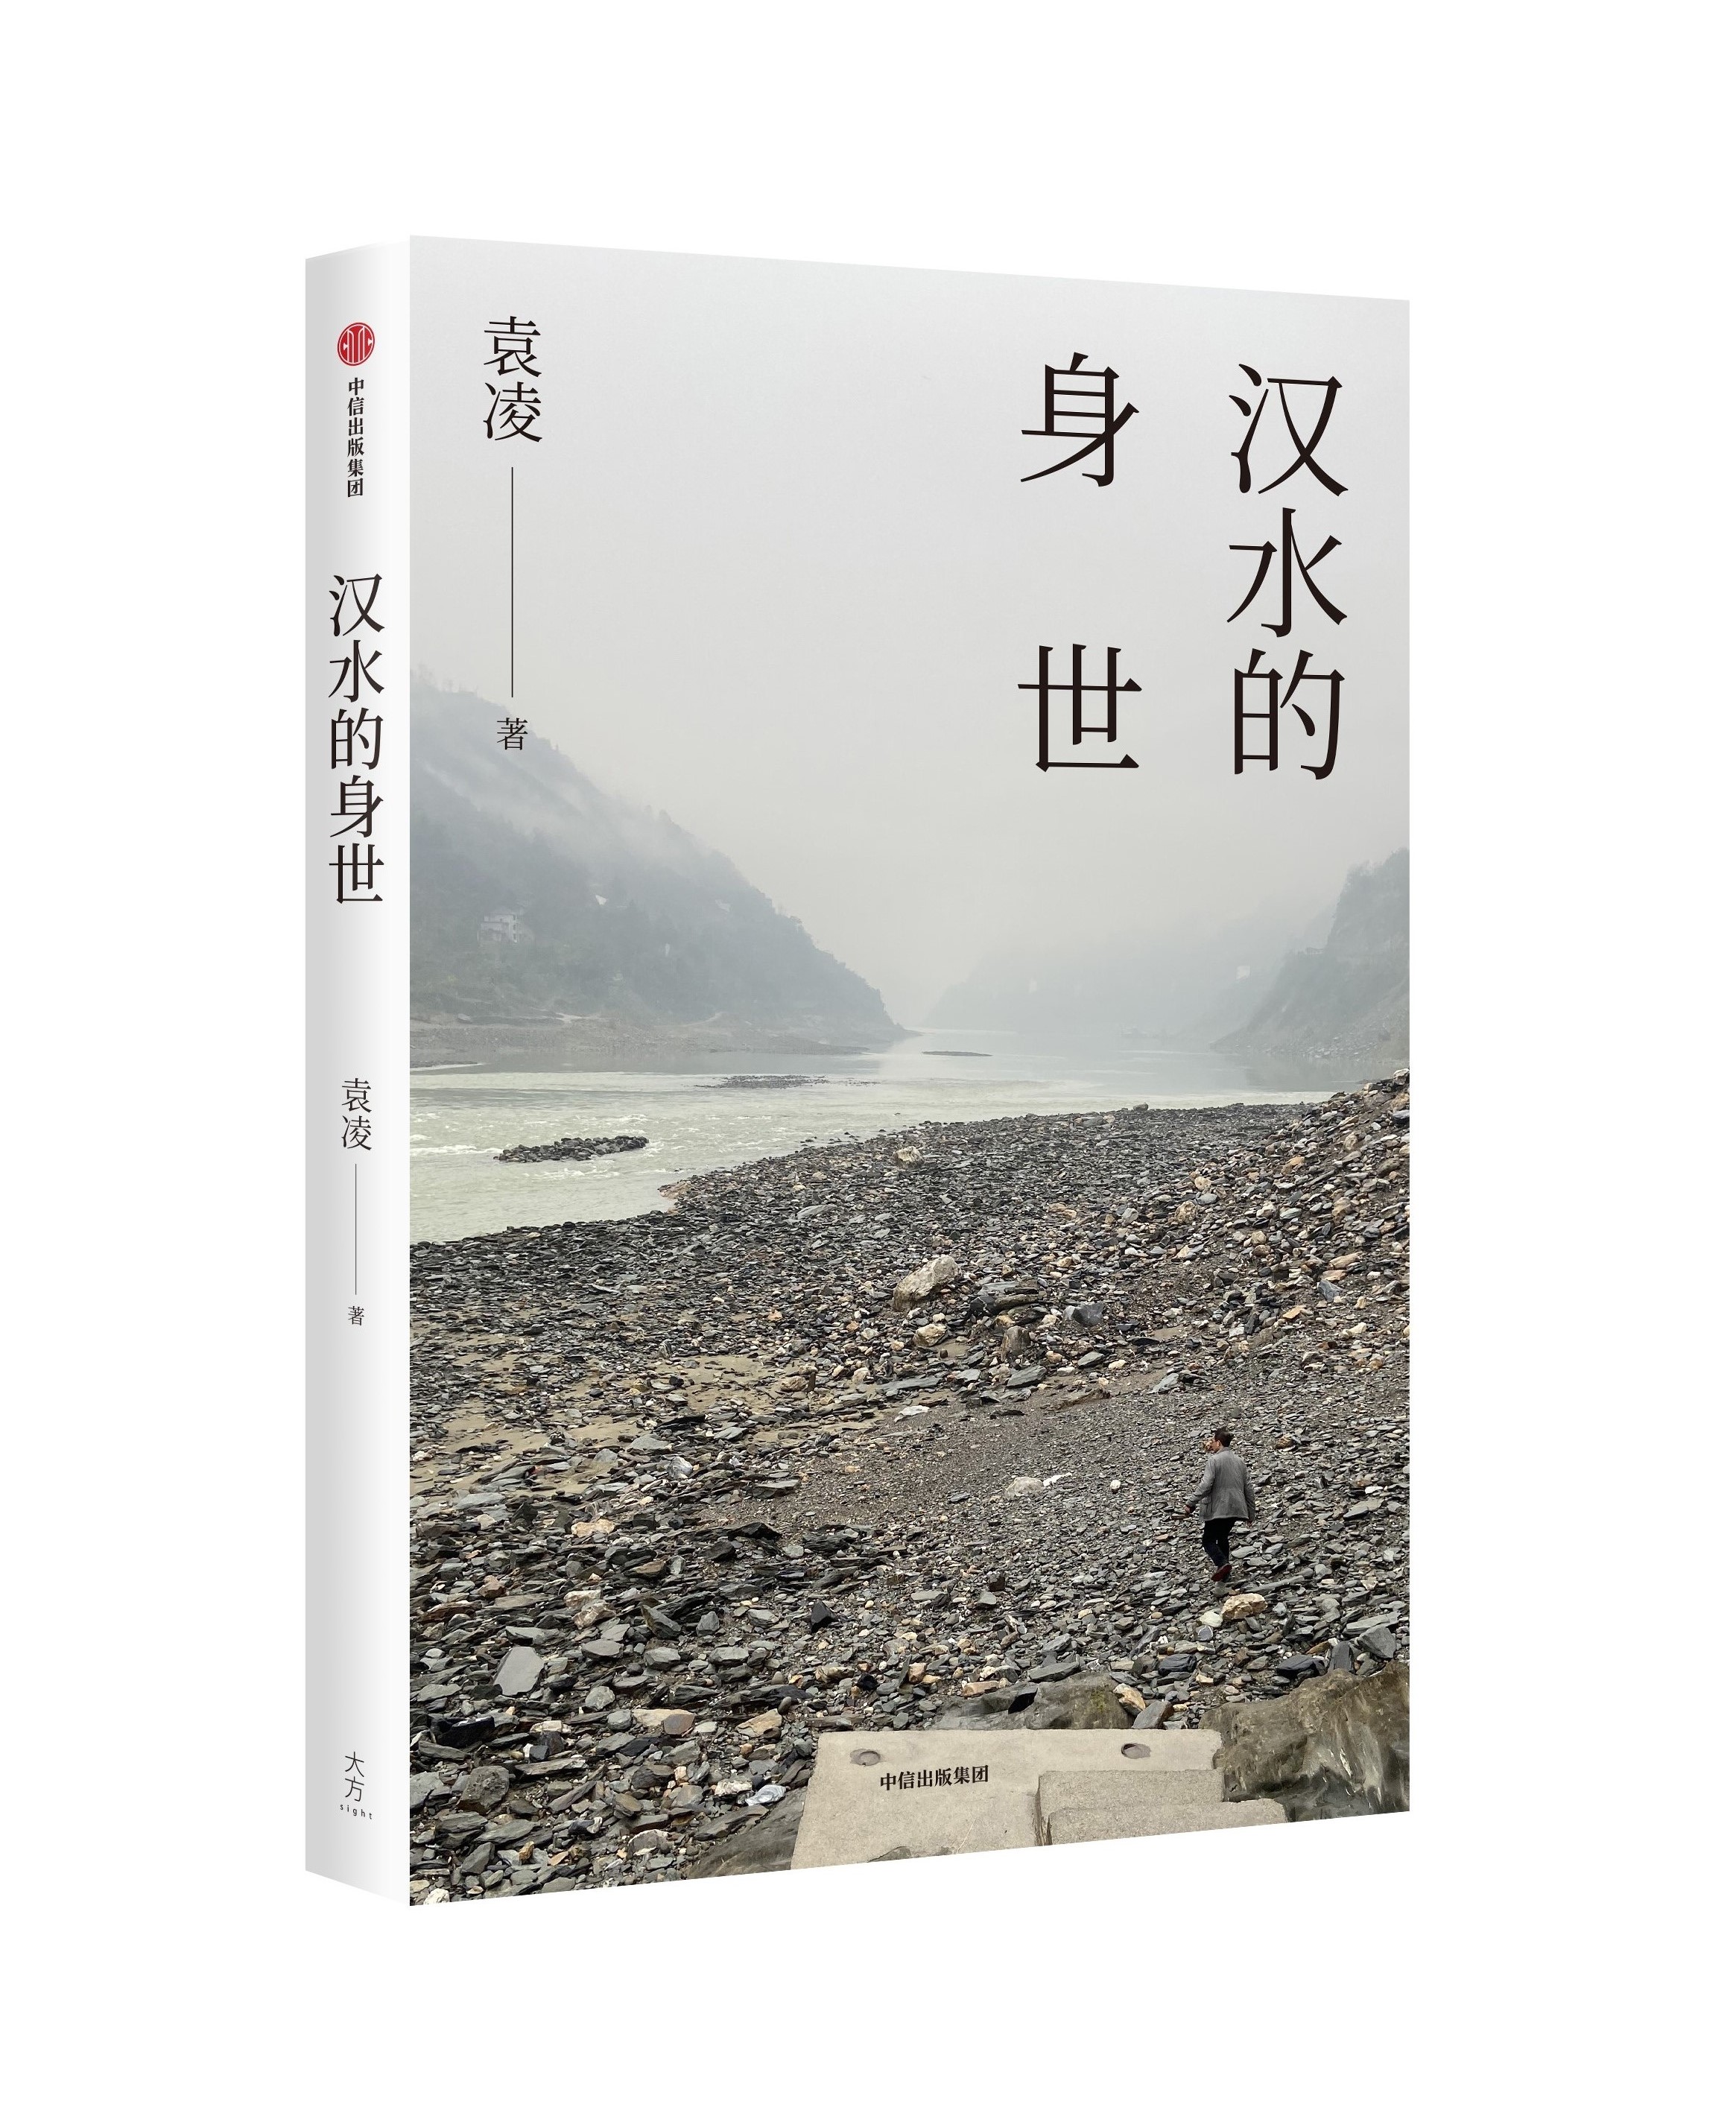 The book of <em>Han Shui de Shen Shi</em> Photo: Courtesy of CITIC Press Group